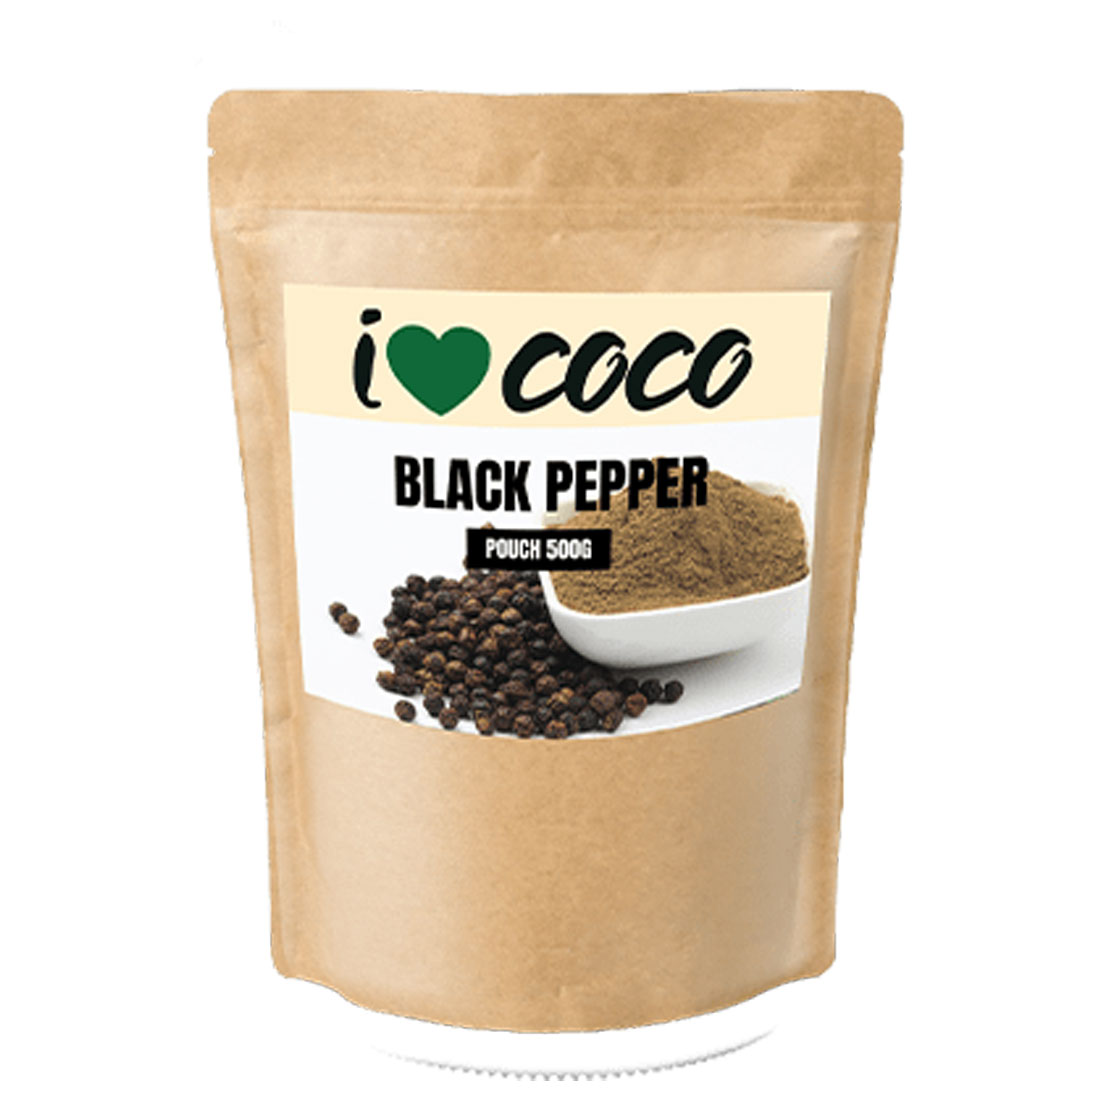 I Love Coco - Black Pepper